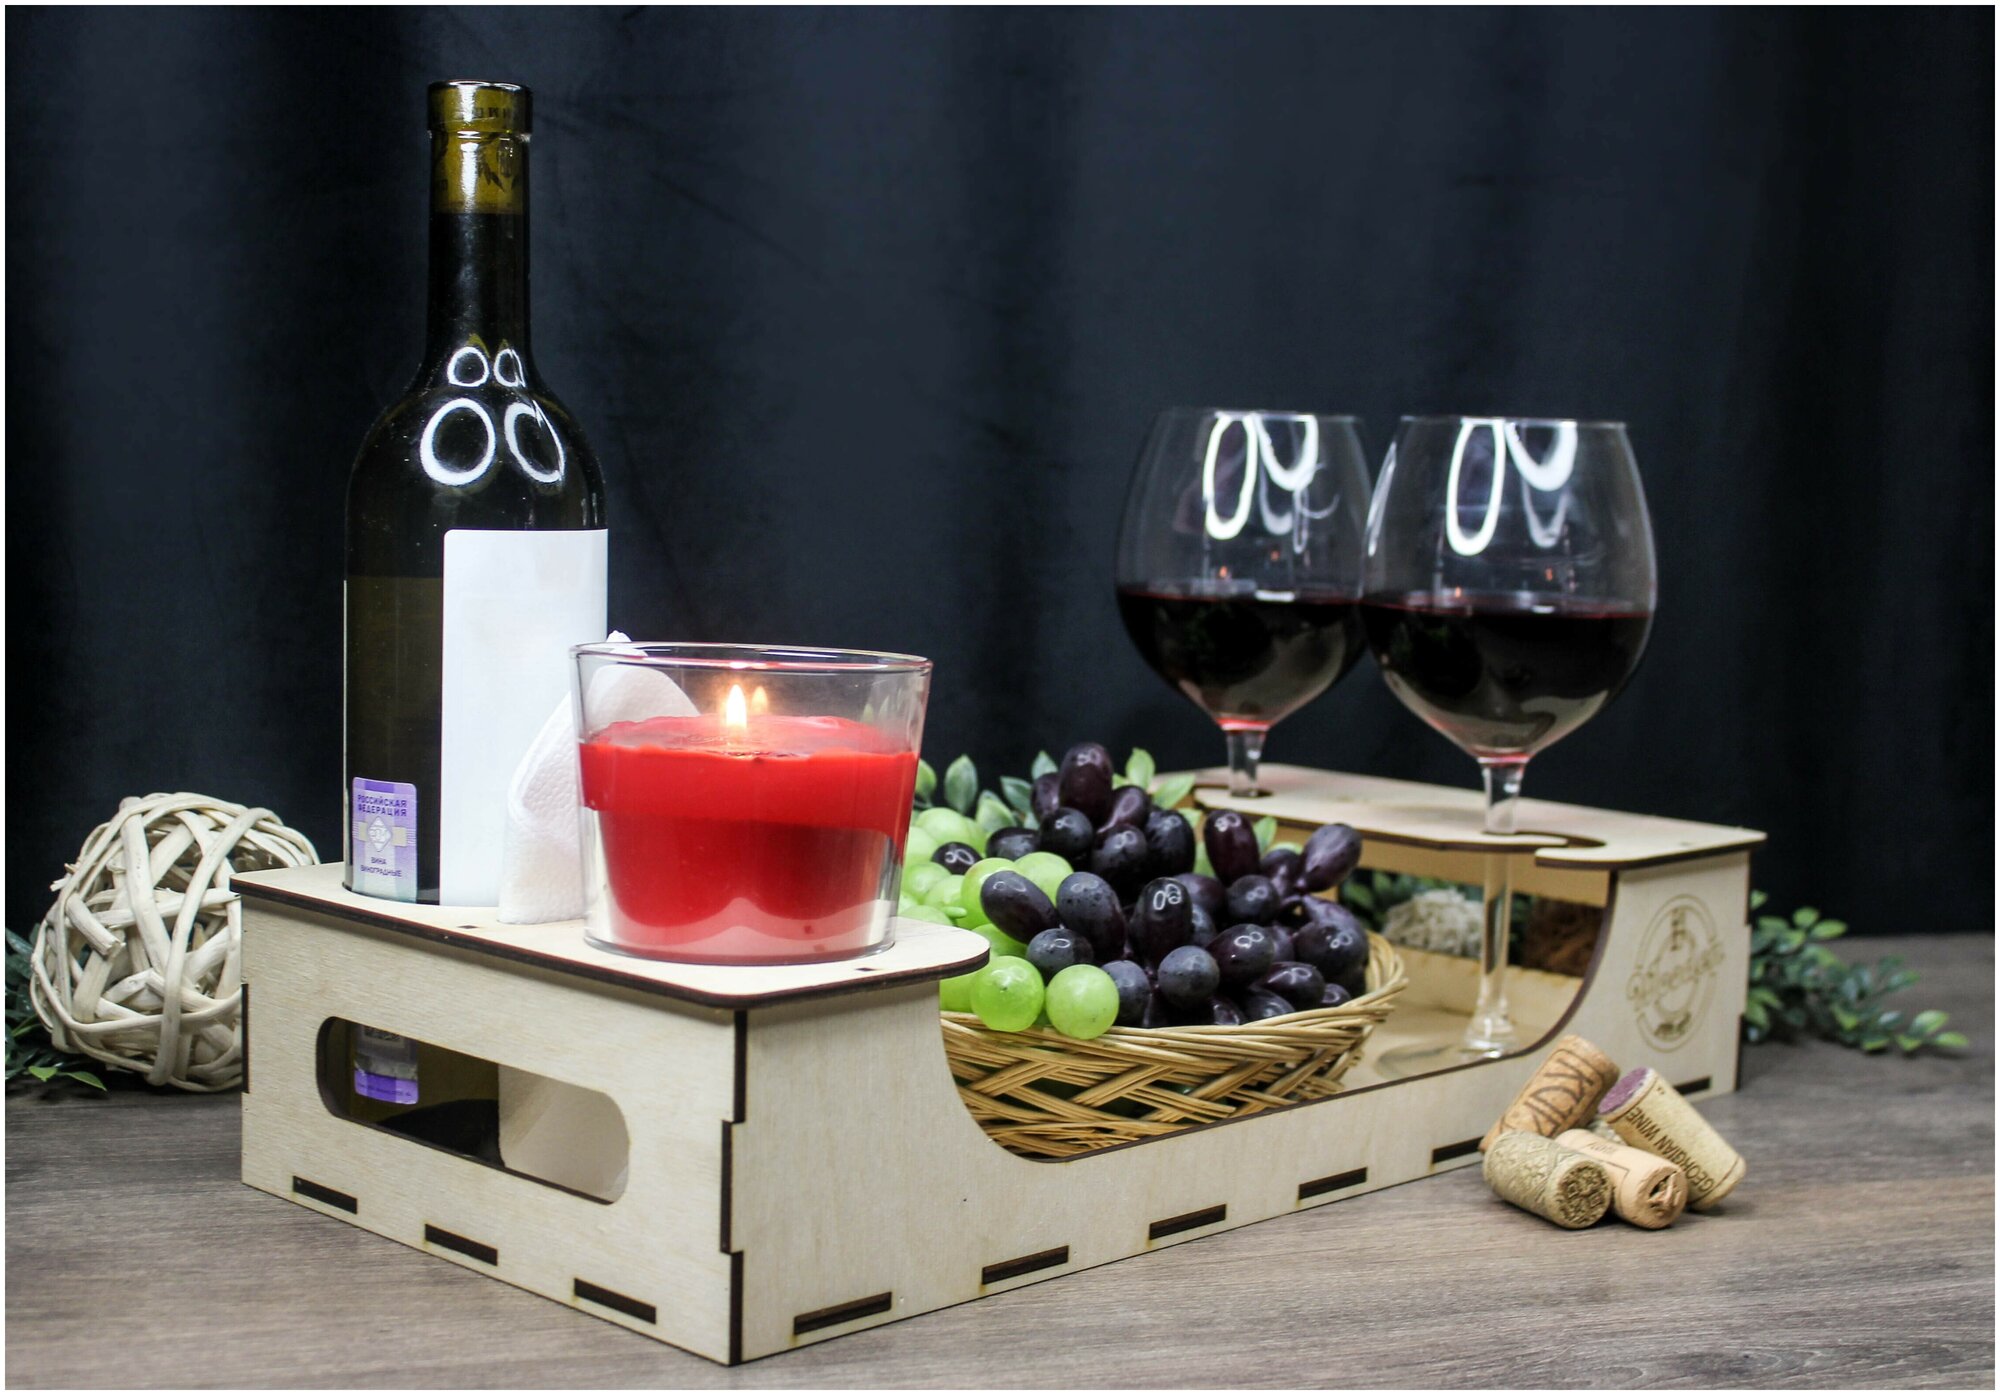 Винный столик, деревянный, бежевый,25х55см/поднос для вина и фруктов, из дерева/винный поднос/винница/подарок парню/мужчине/столик-поднос для завтрака